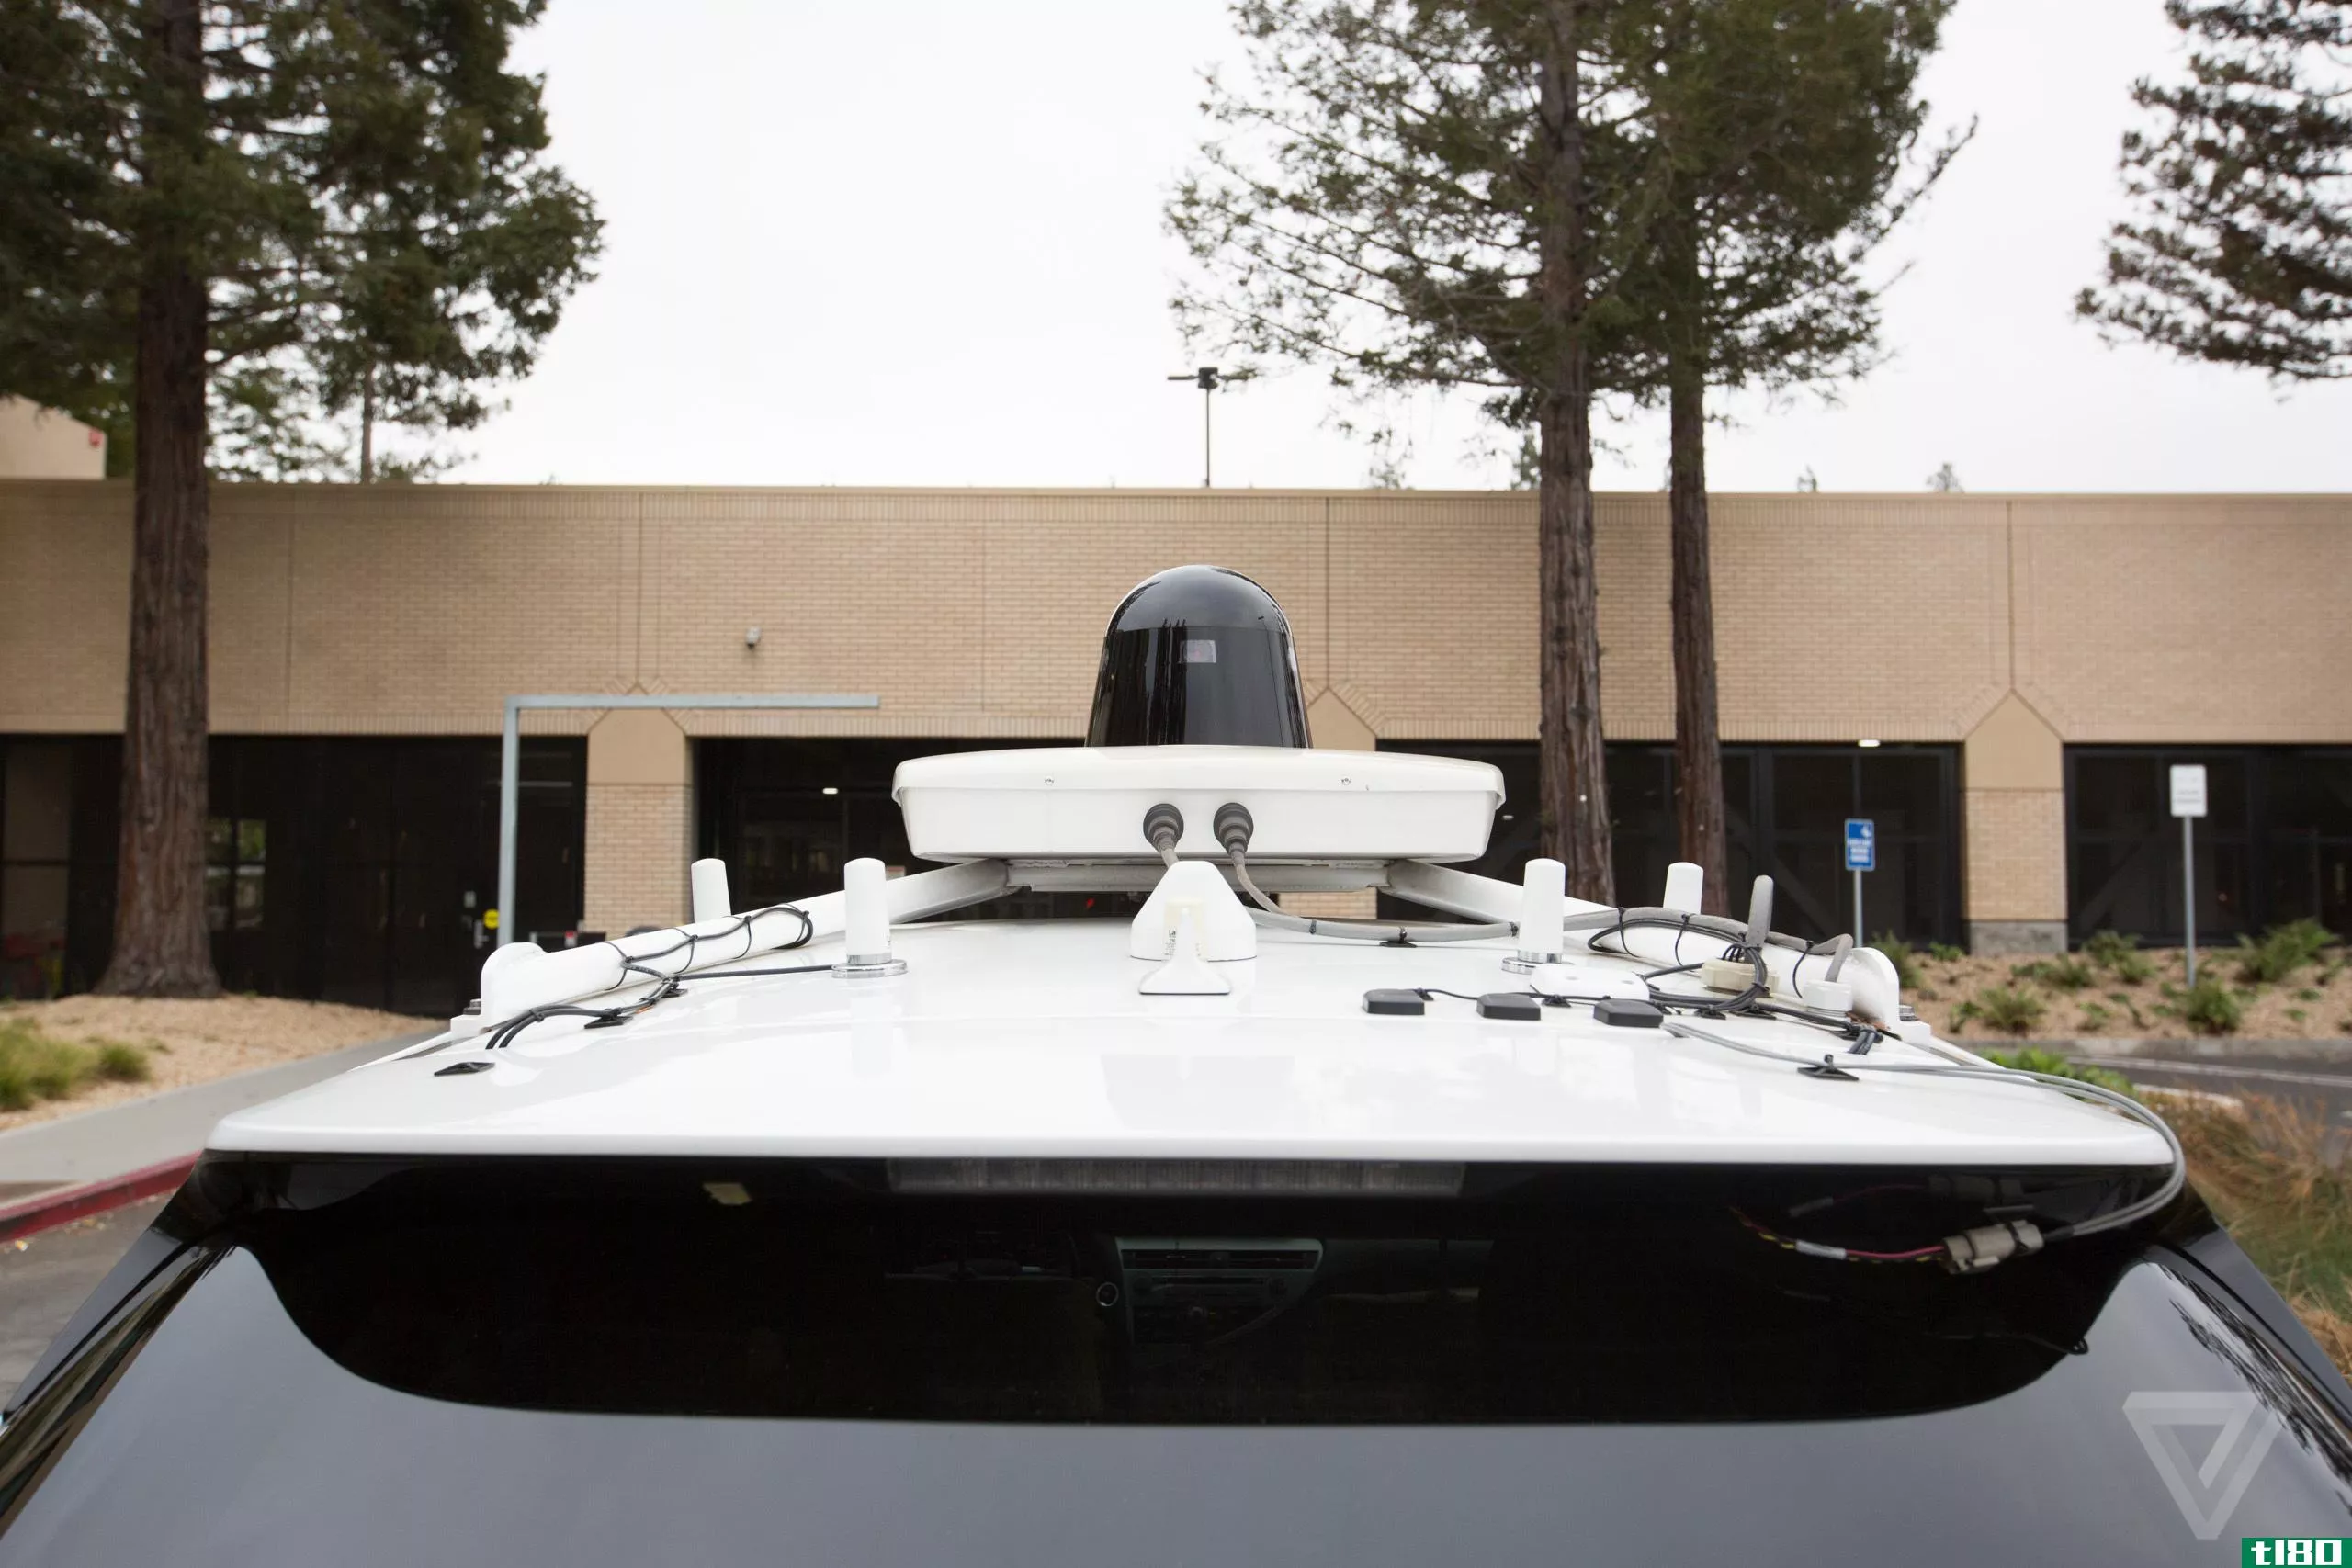 谷歌首款自动驾驶克莱斯勒pacifica面包车的图片浮出水面